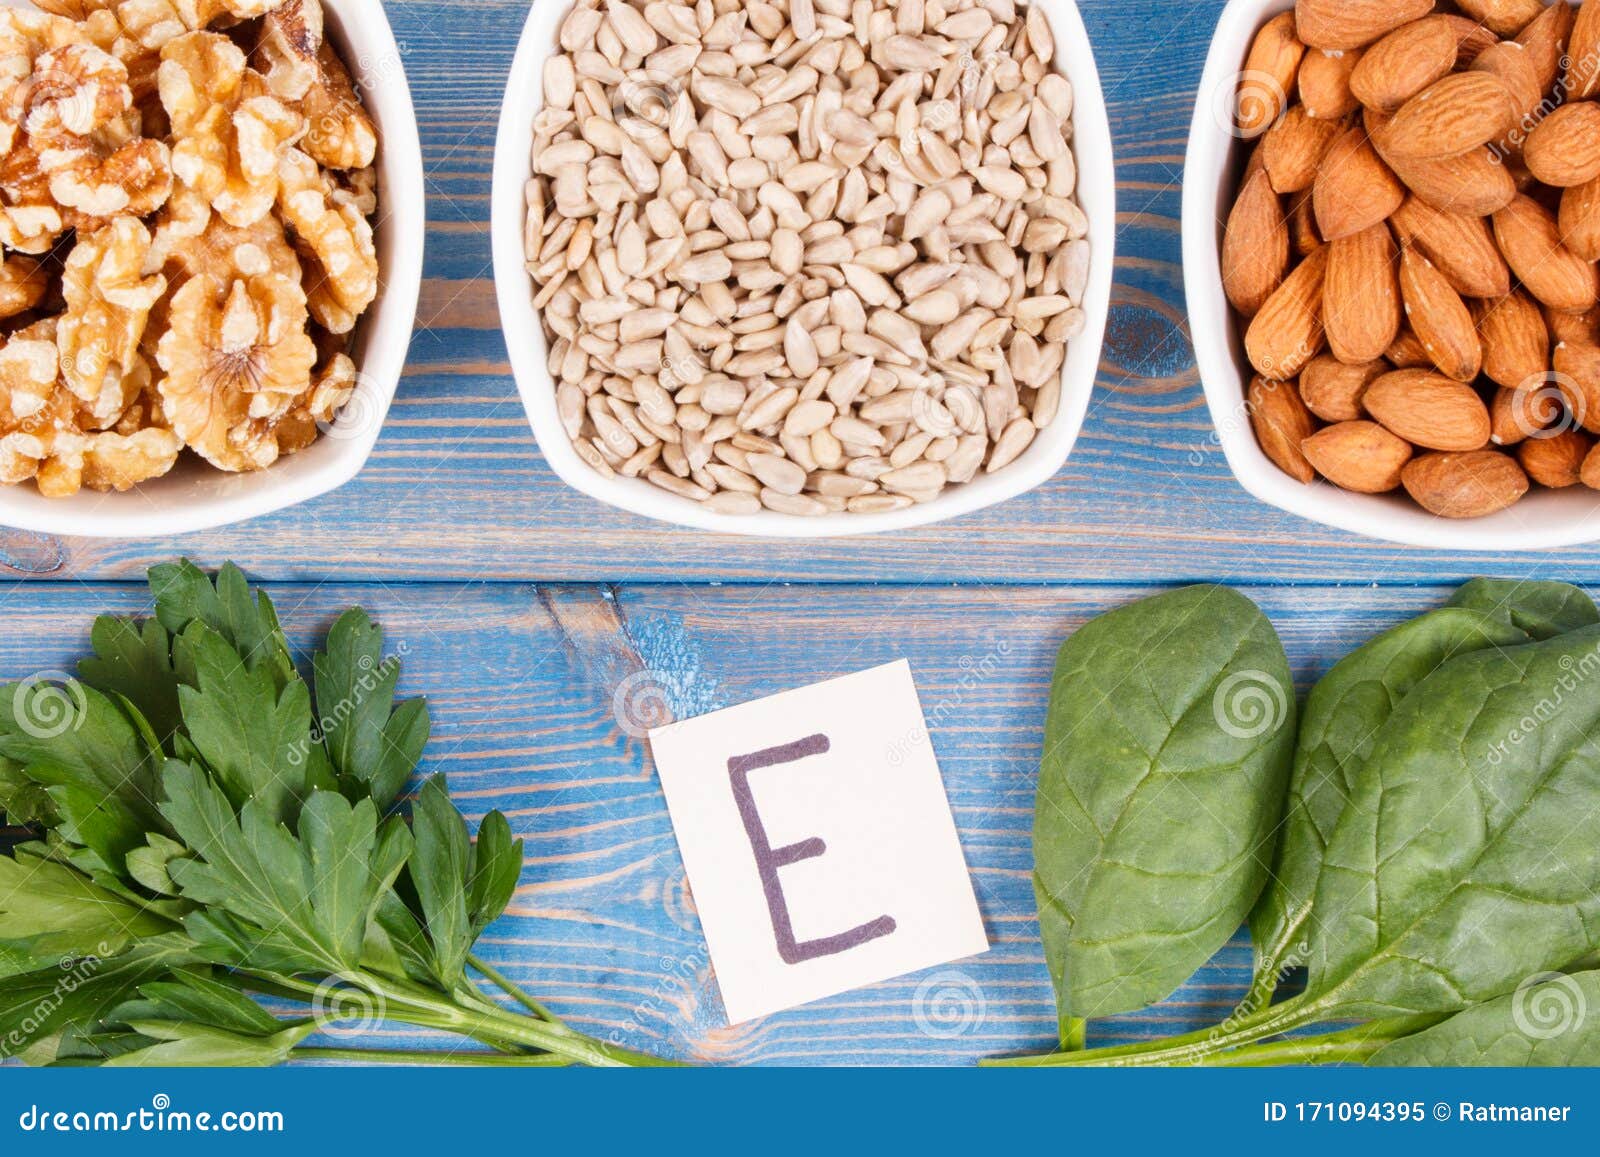 Natuurlijke Producten Ingrediënten Als Bron Vitamine E, Mineralen En Voedingsvezel Stock Afbeelding - Image of mineralen: